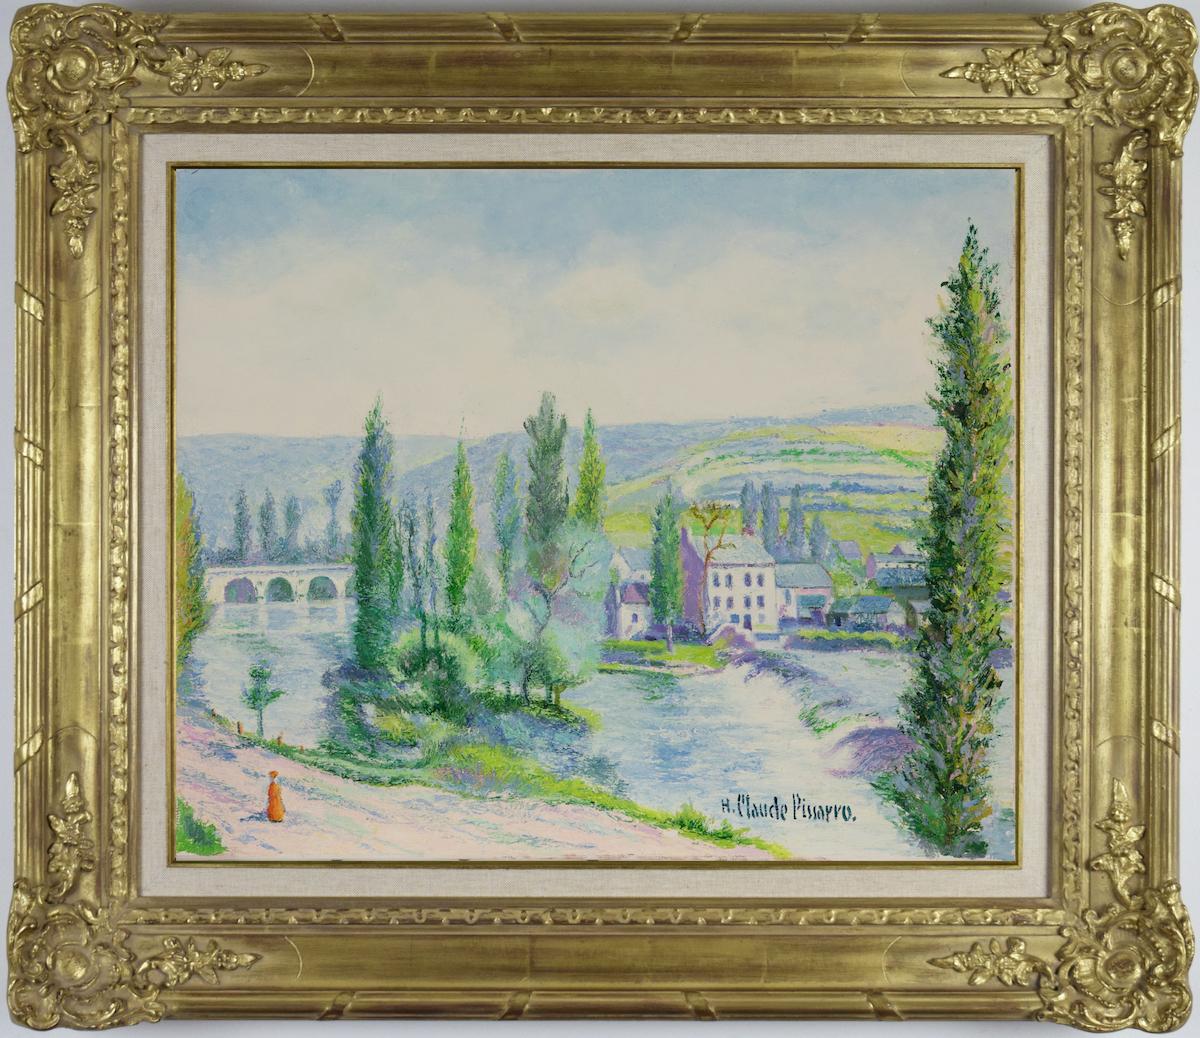 L'Orne au Pont de Vey by H. Claude Pissarro - Post-Impressionist style - Painting by Hughes Claude Pissarro